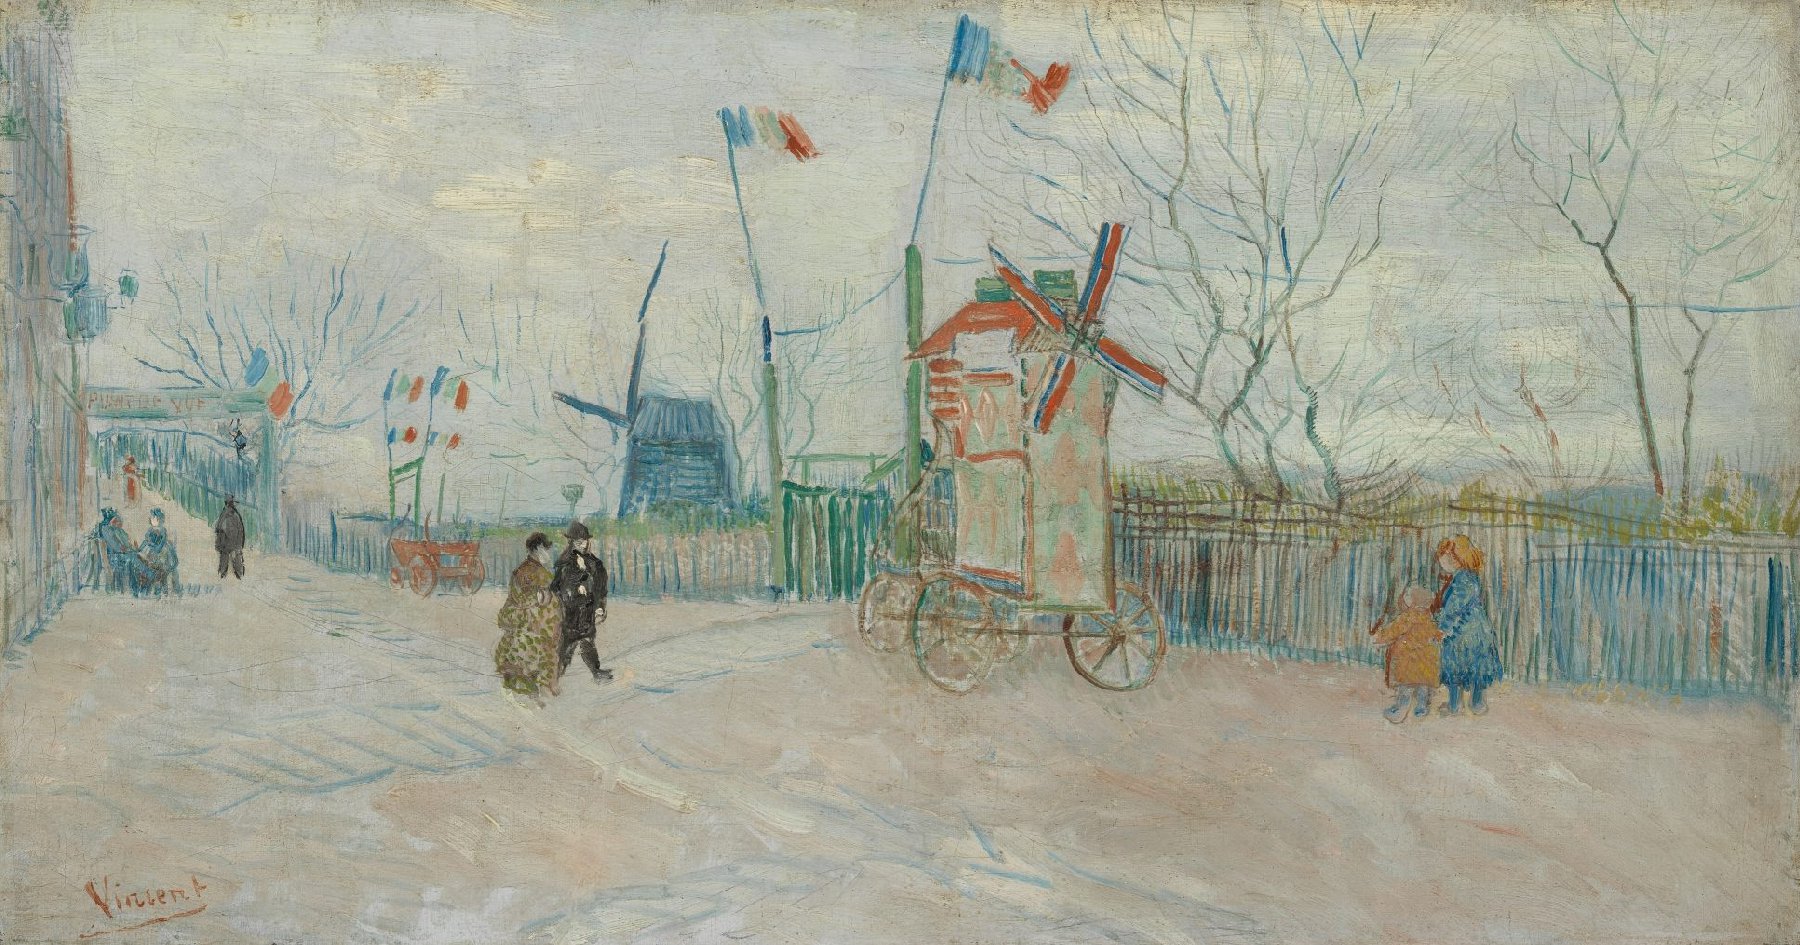 Impasse des Deux Frères Vincent van Gogh (1853 - 1890), Parijs, februari-april 1887